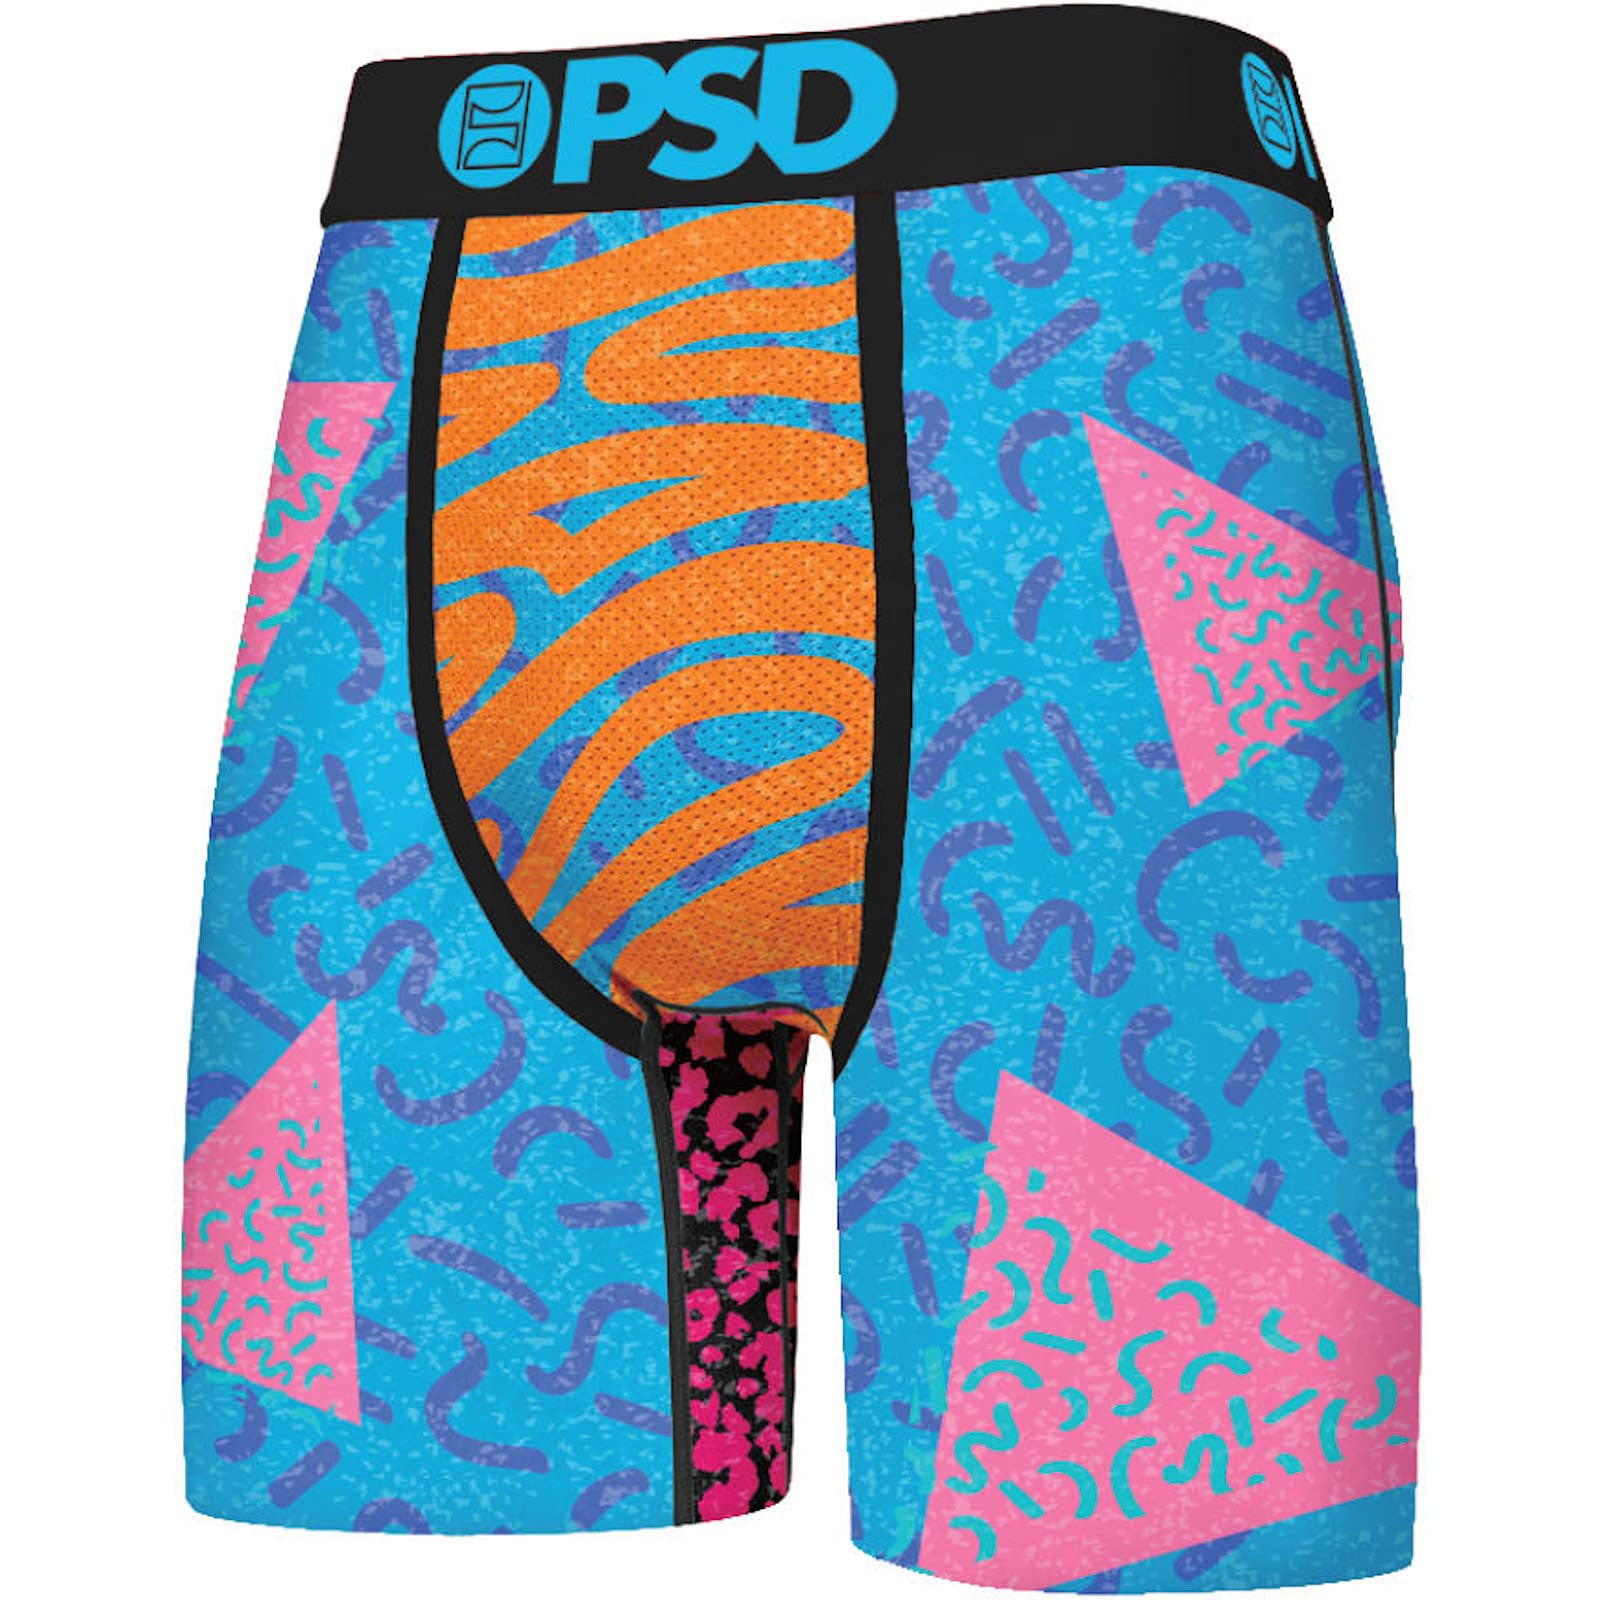 PSD SC Shredder Boxer Men's Bottom Underwear (Brand New) –